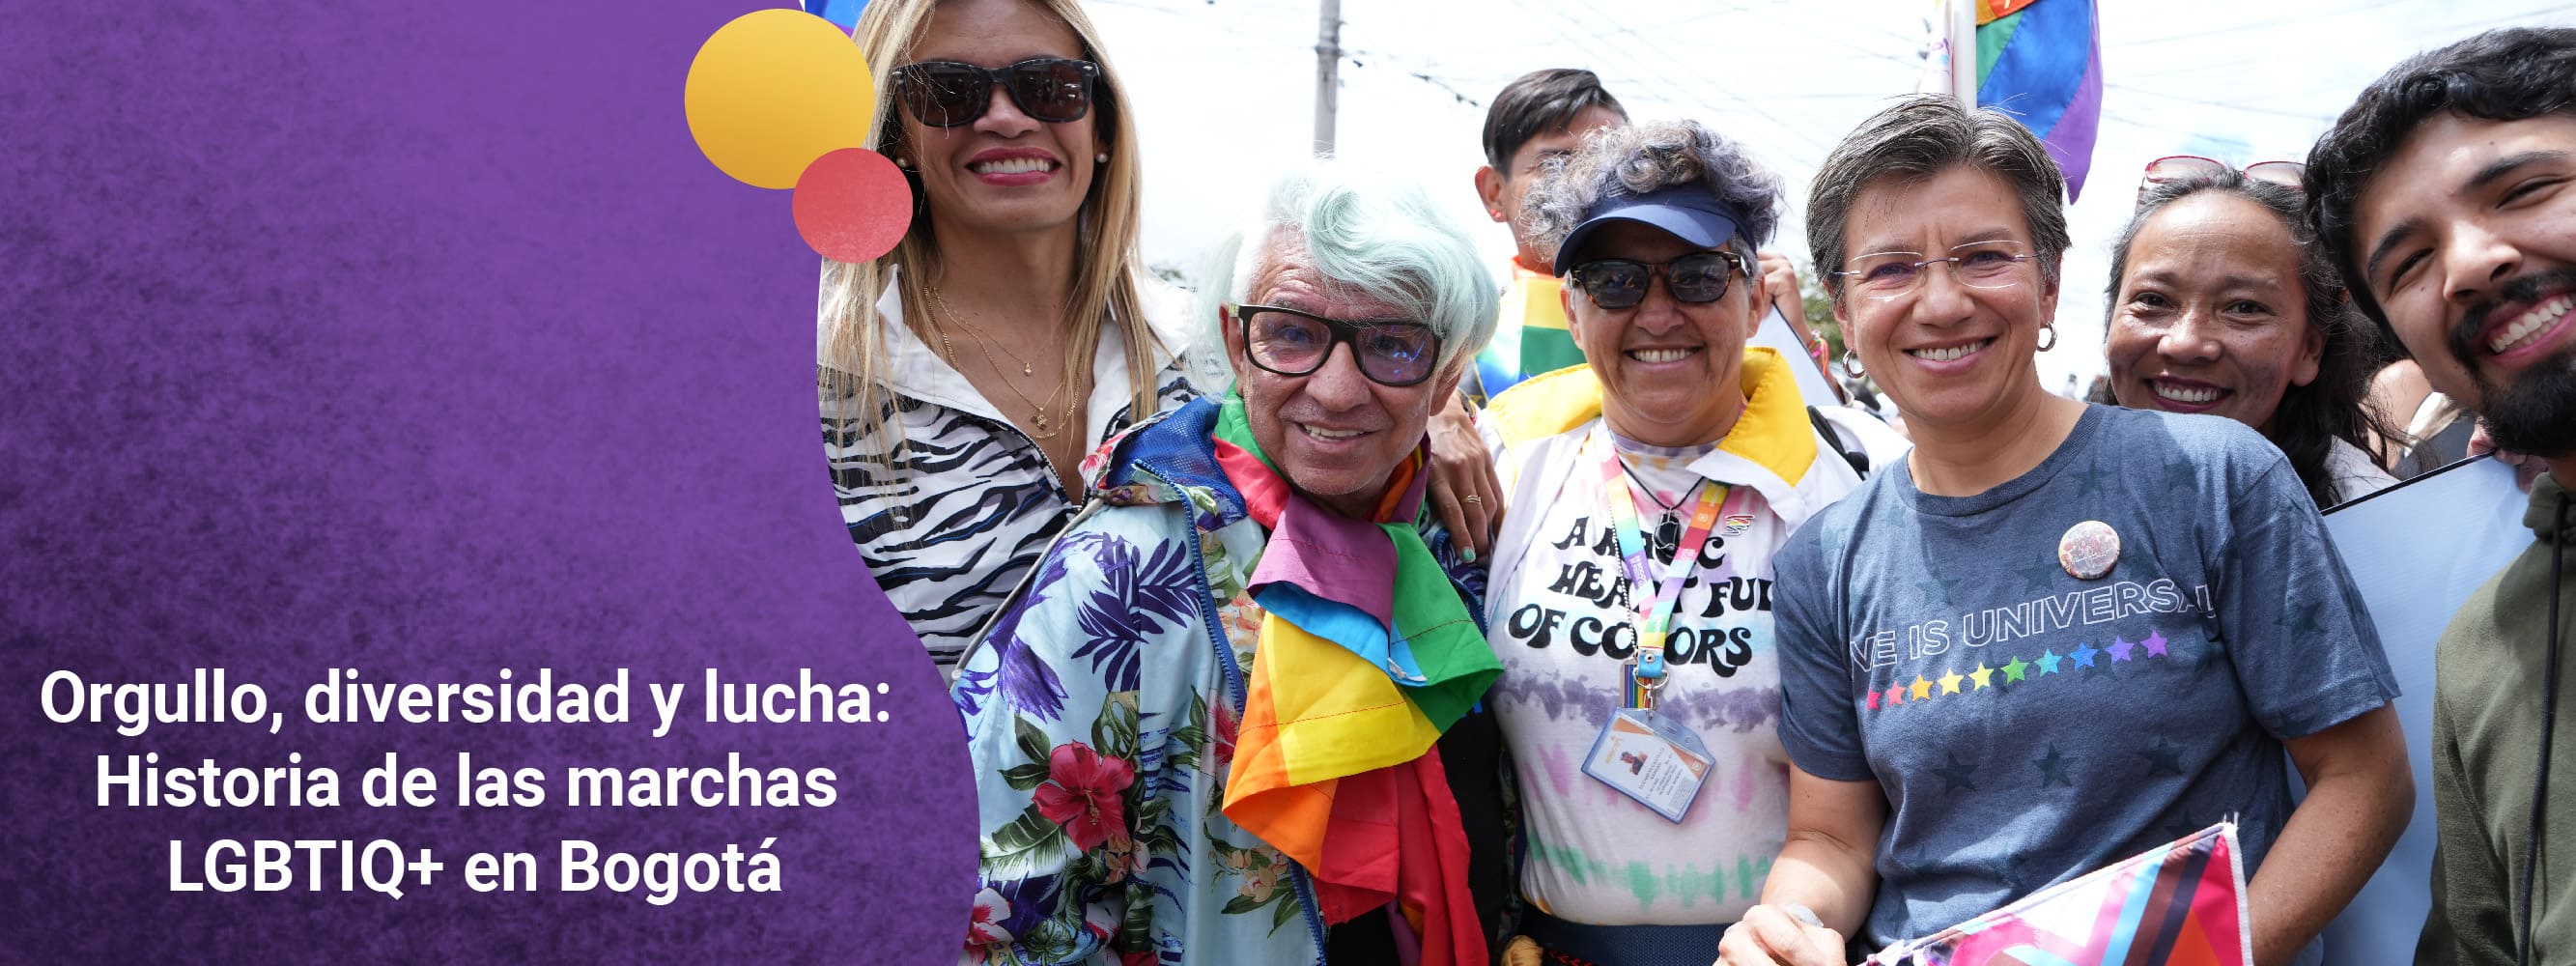 Orgullo, diversidad y lucha: Historia de las marchas LGBTIQ+ en Bogotá